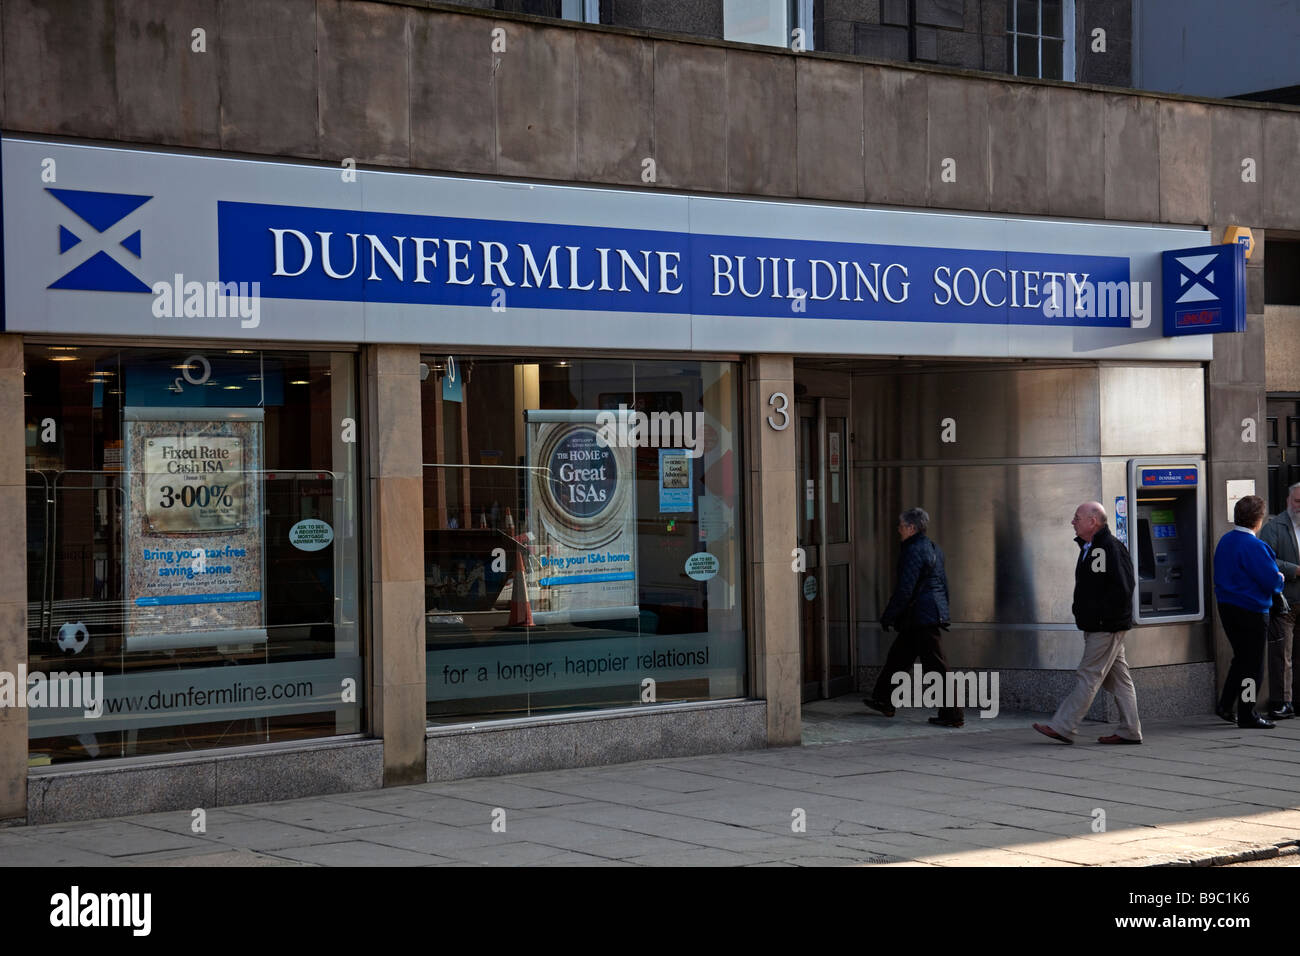 Dunfermline Building Society, Édimbourg, Écosse, Royaume-Uni, Europe Banque D'Images